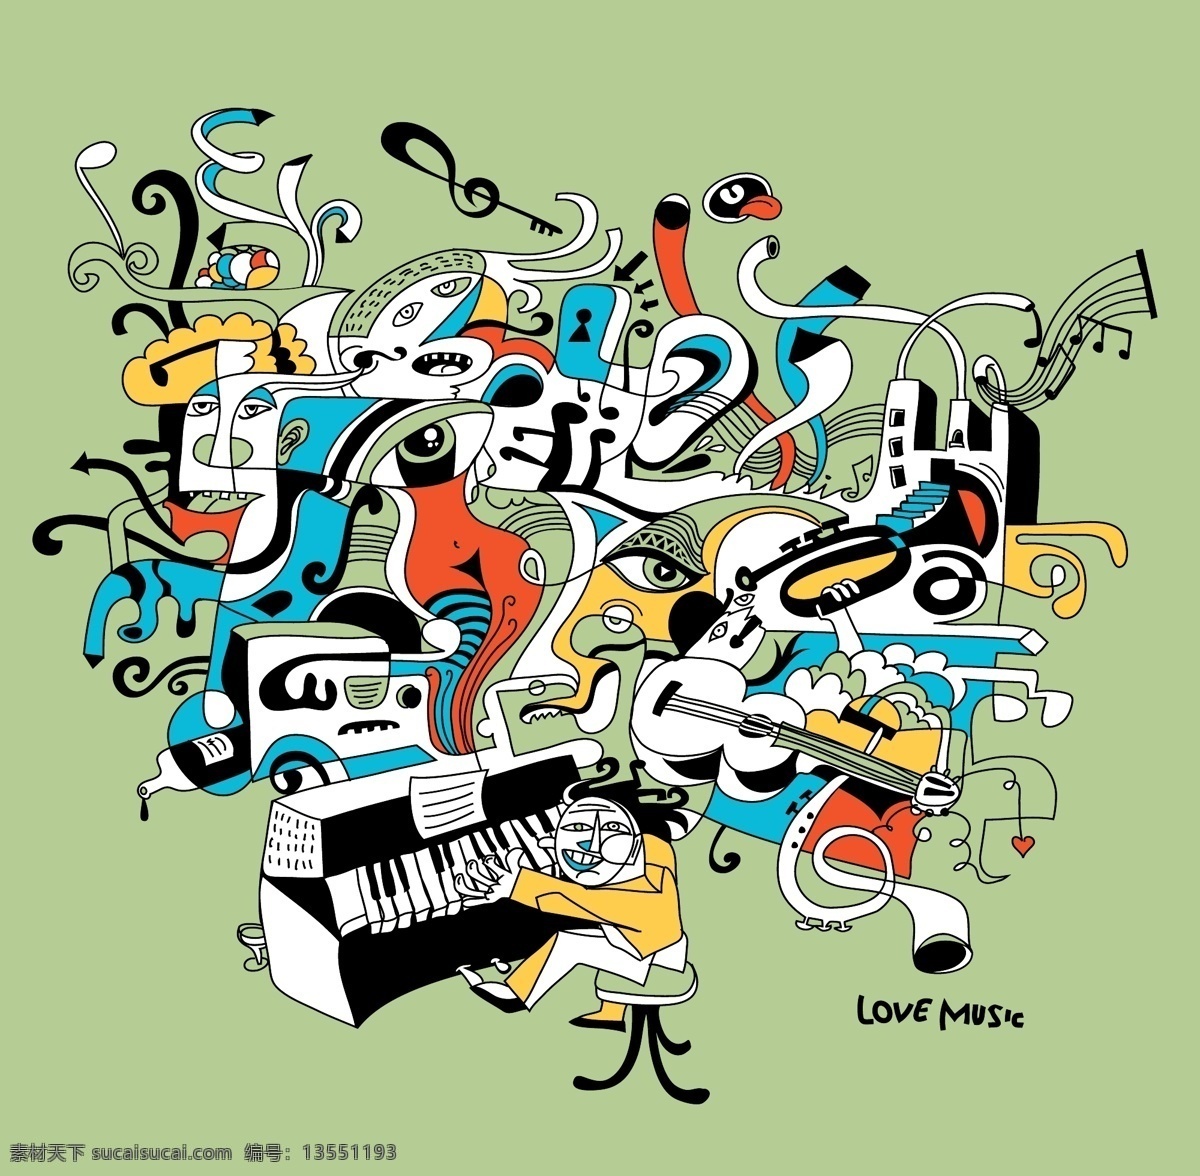 创意 抽象 音乐 插画 卡通插画 吉他 钢琴 音乐背景 音乐主题 音乐海报 影音娱乐 生活百科 矢量素材 绿色